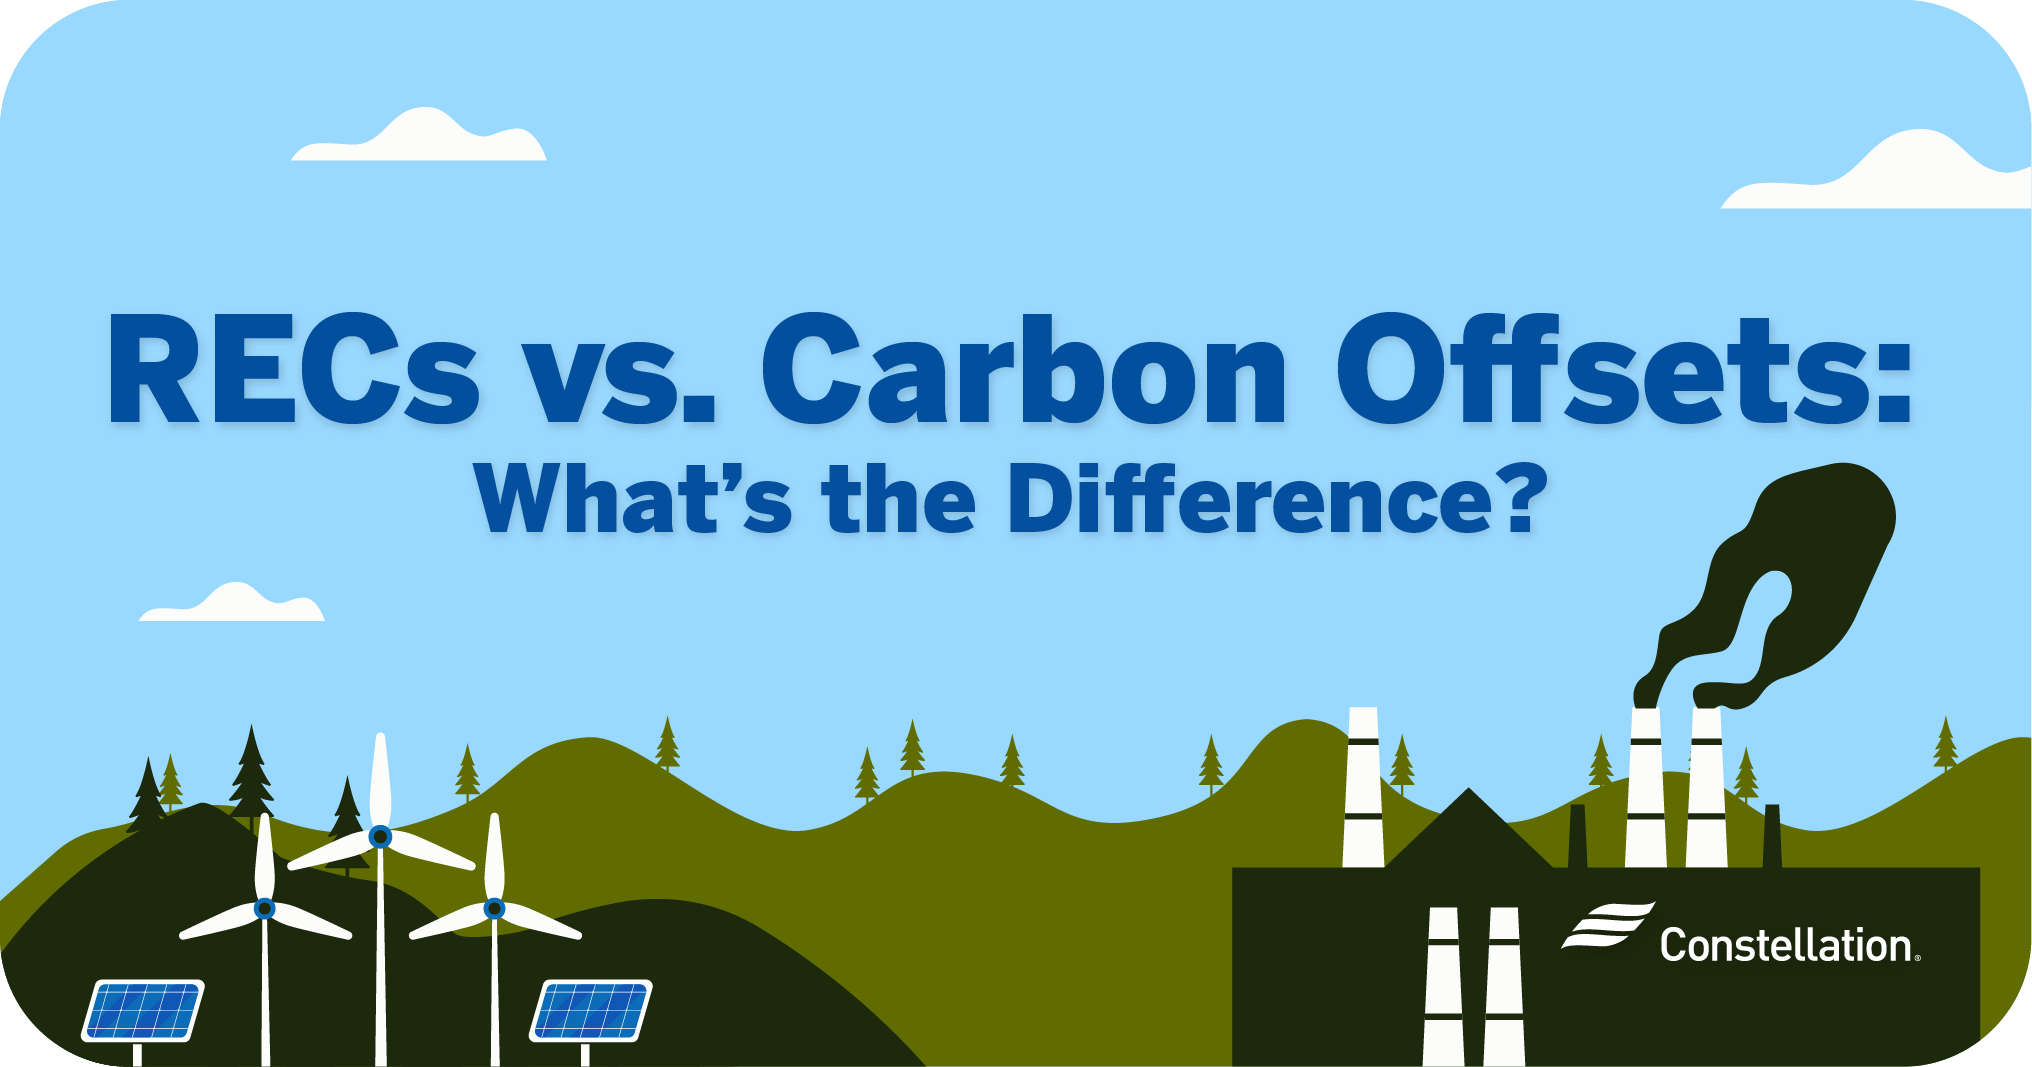 RECs vs. carbon offsets.